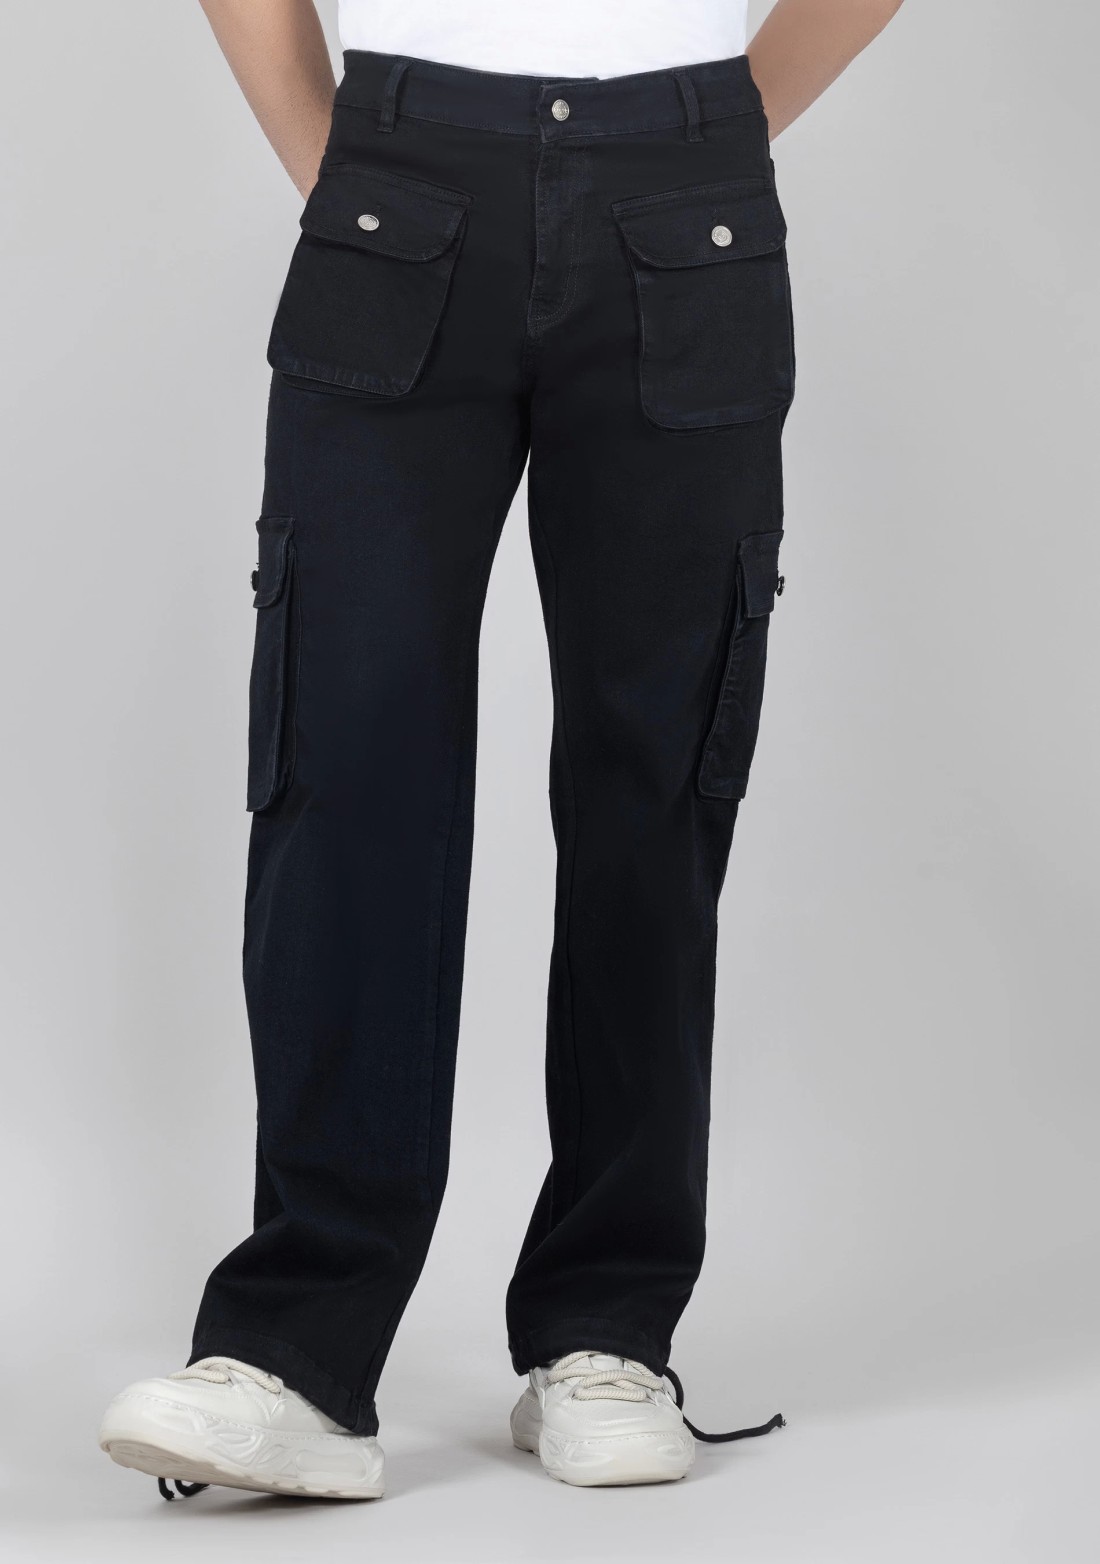 Melissa Flat Front Tropical Jet Black Pants - M&H Uniforms